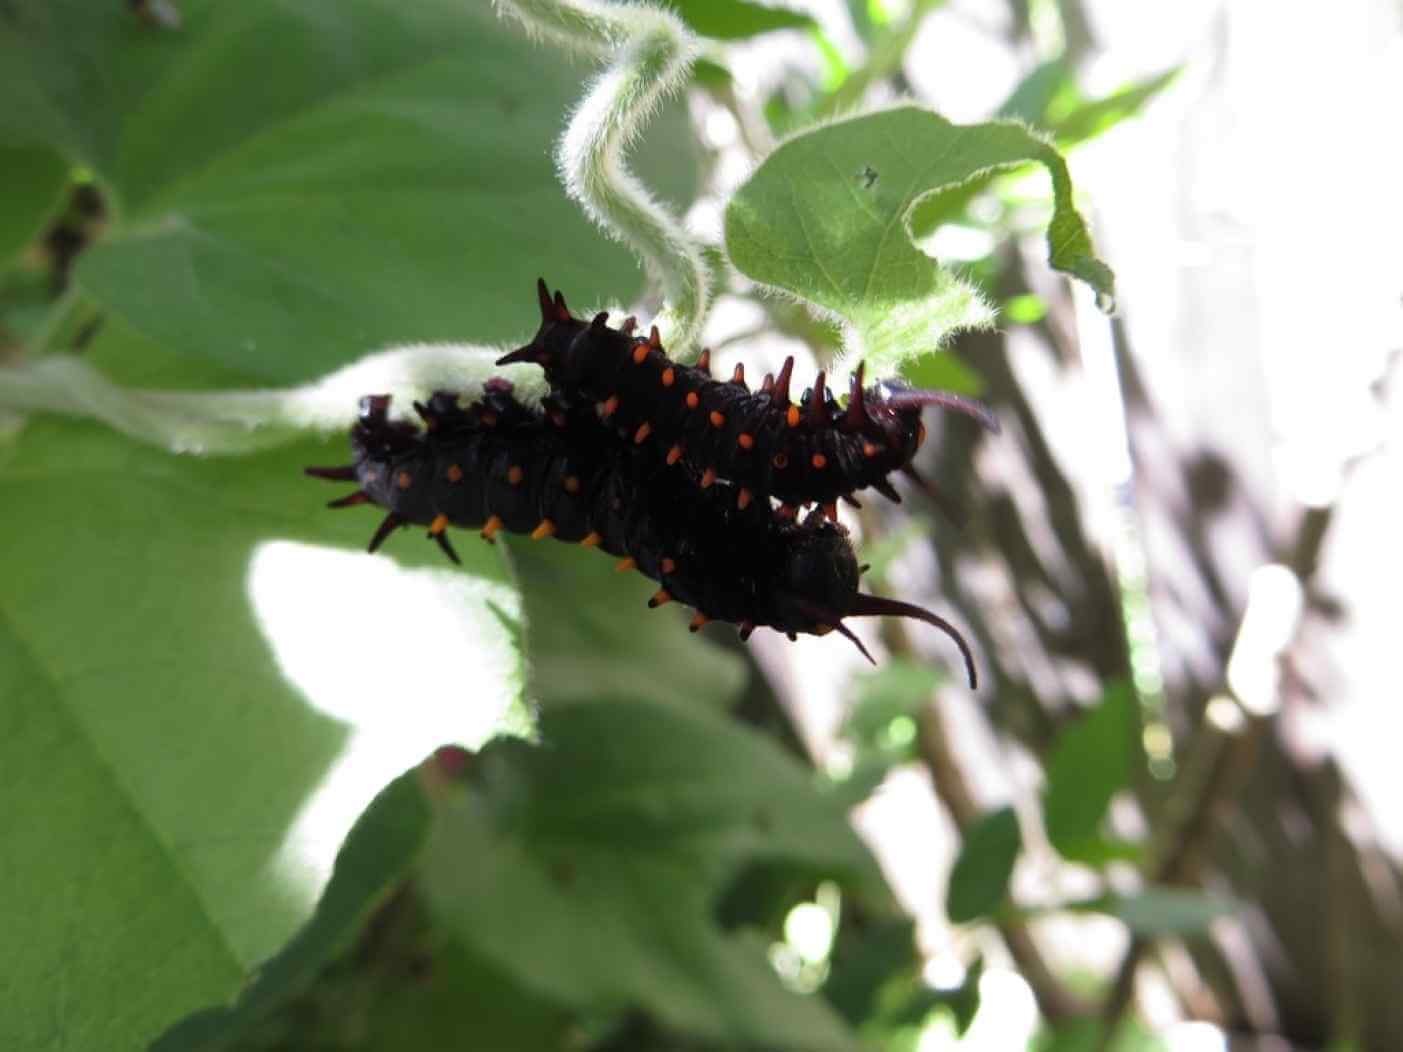 Home Ground Habitats - Caterpillars